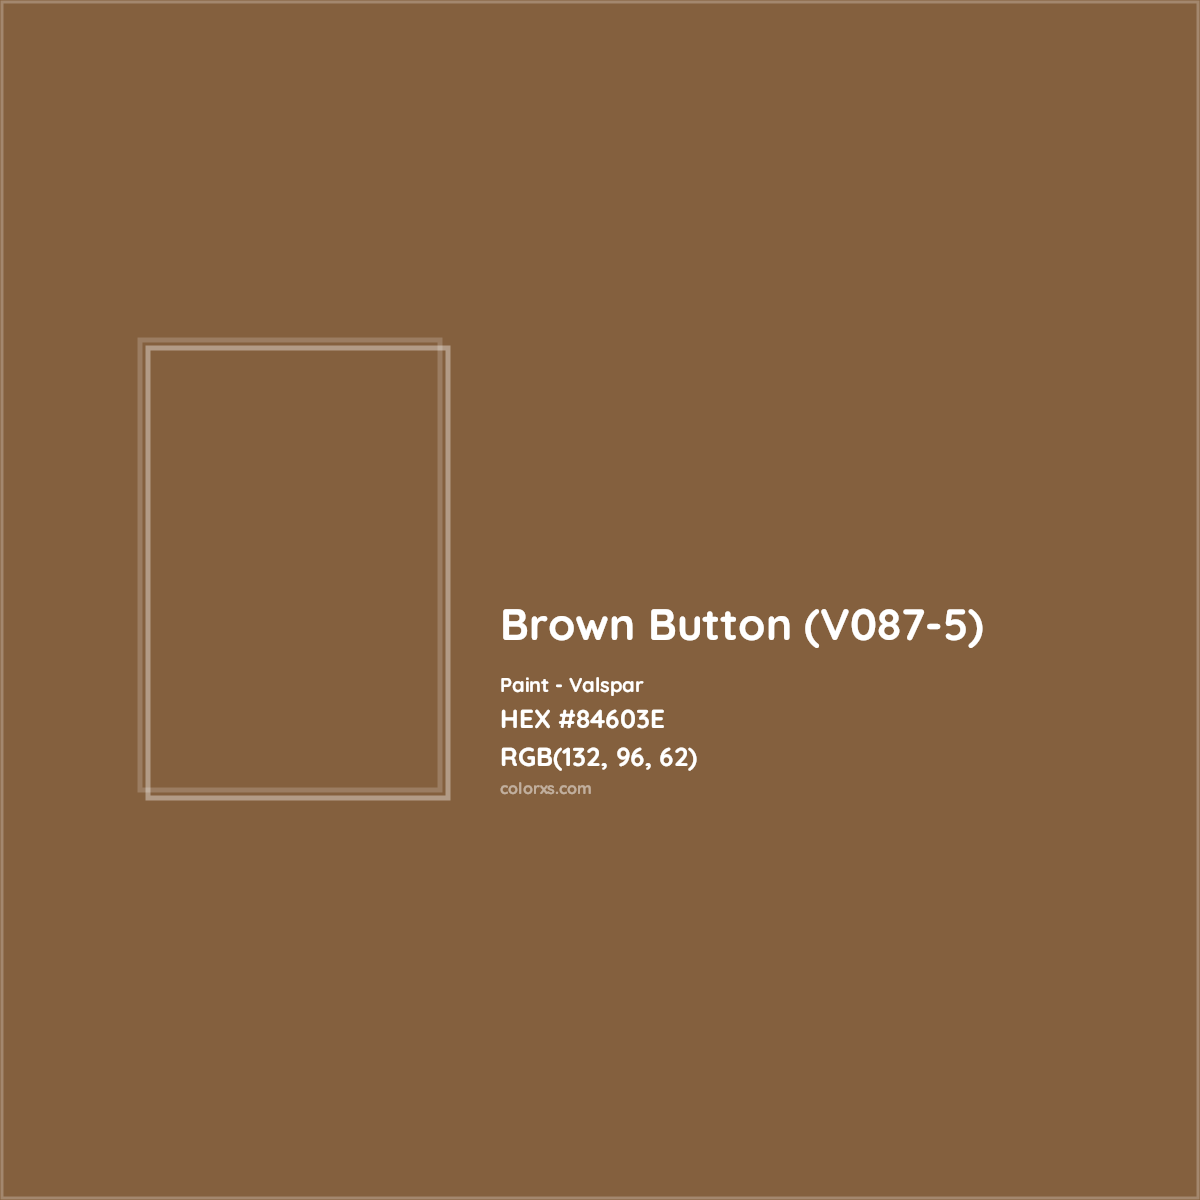 HEX #84603E Brown Button (V087-5) Paint Valspar - Color Code